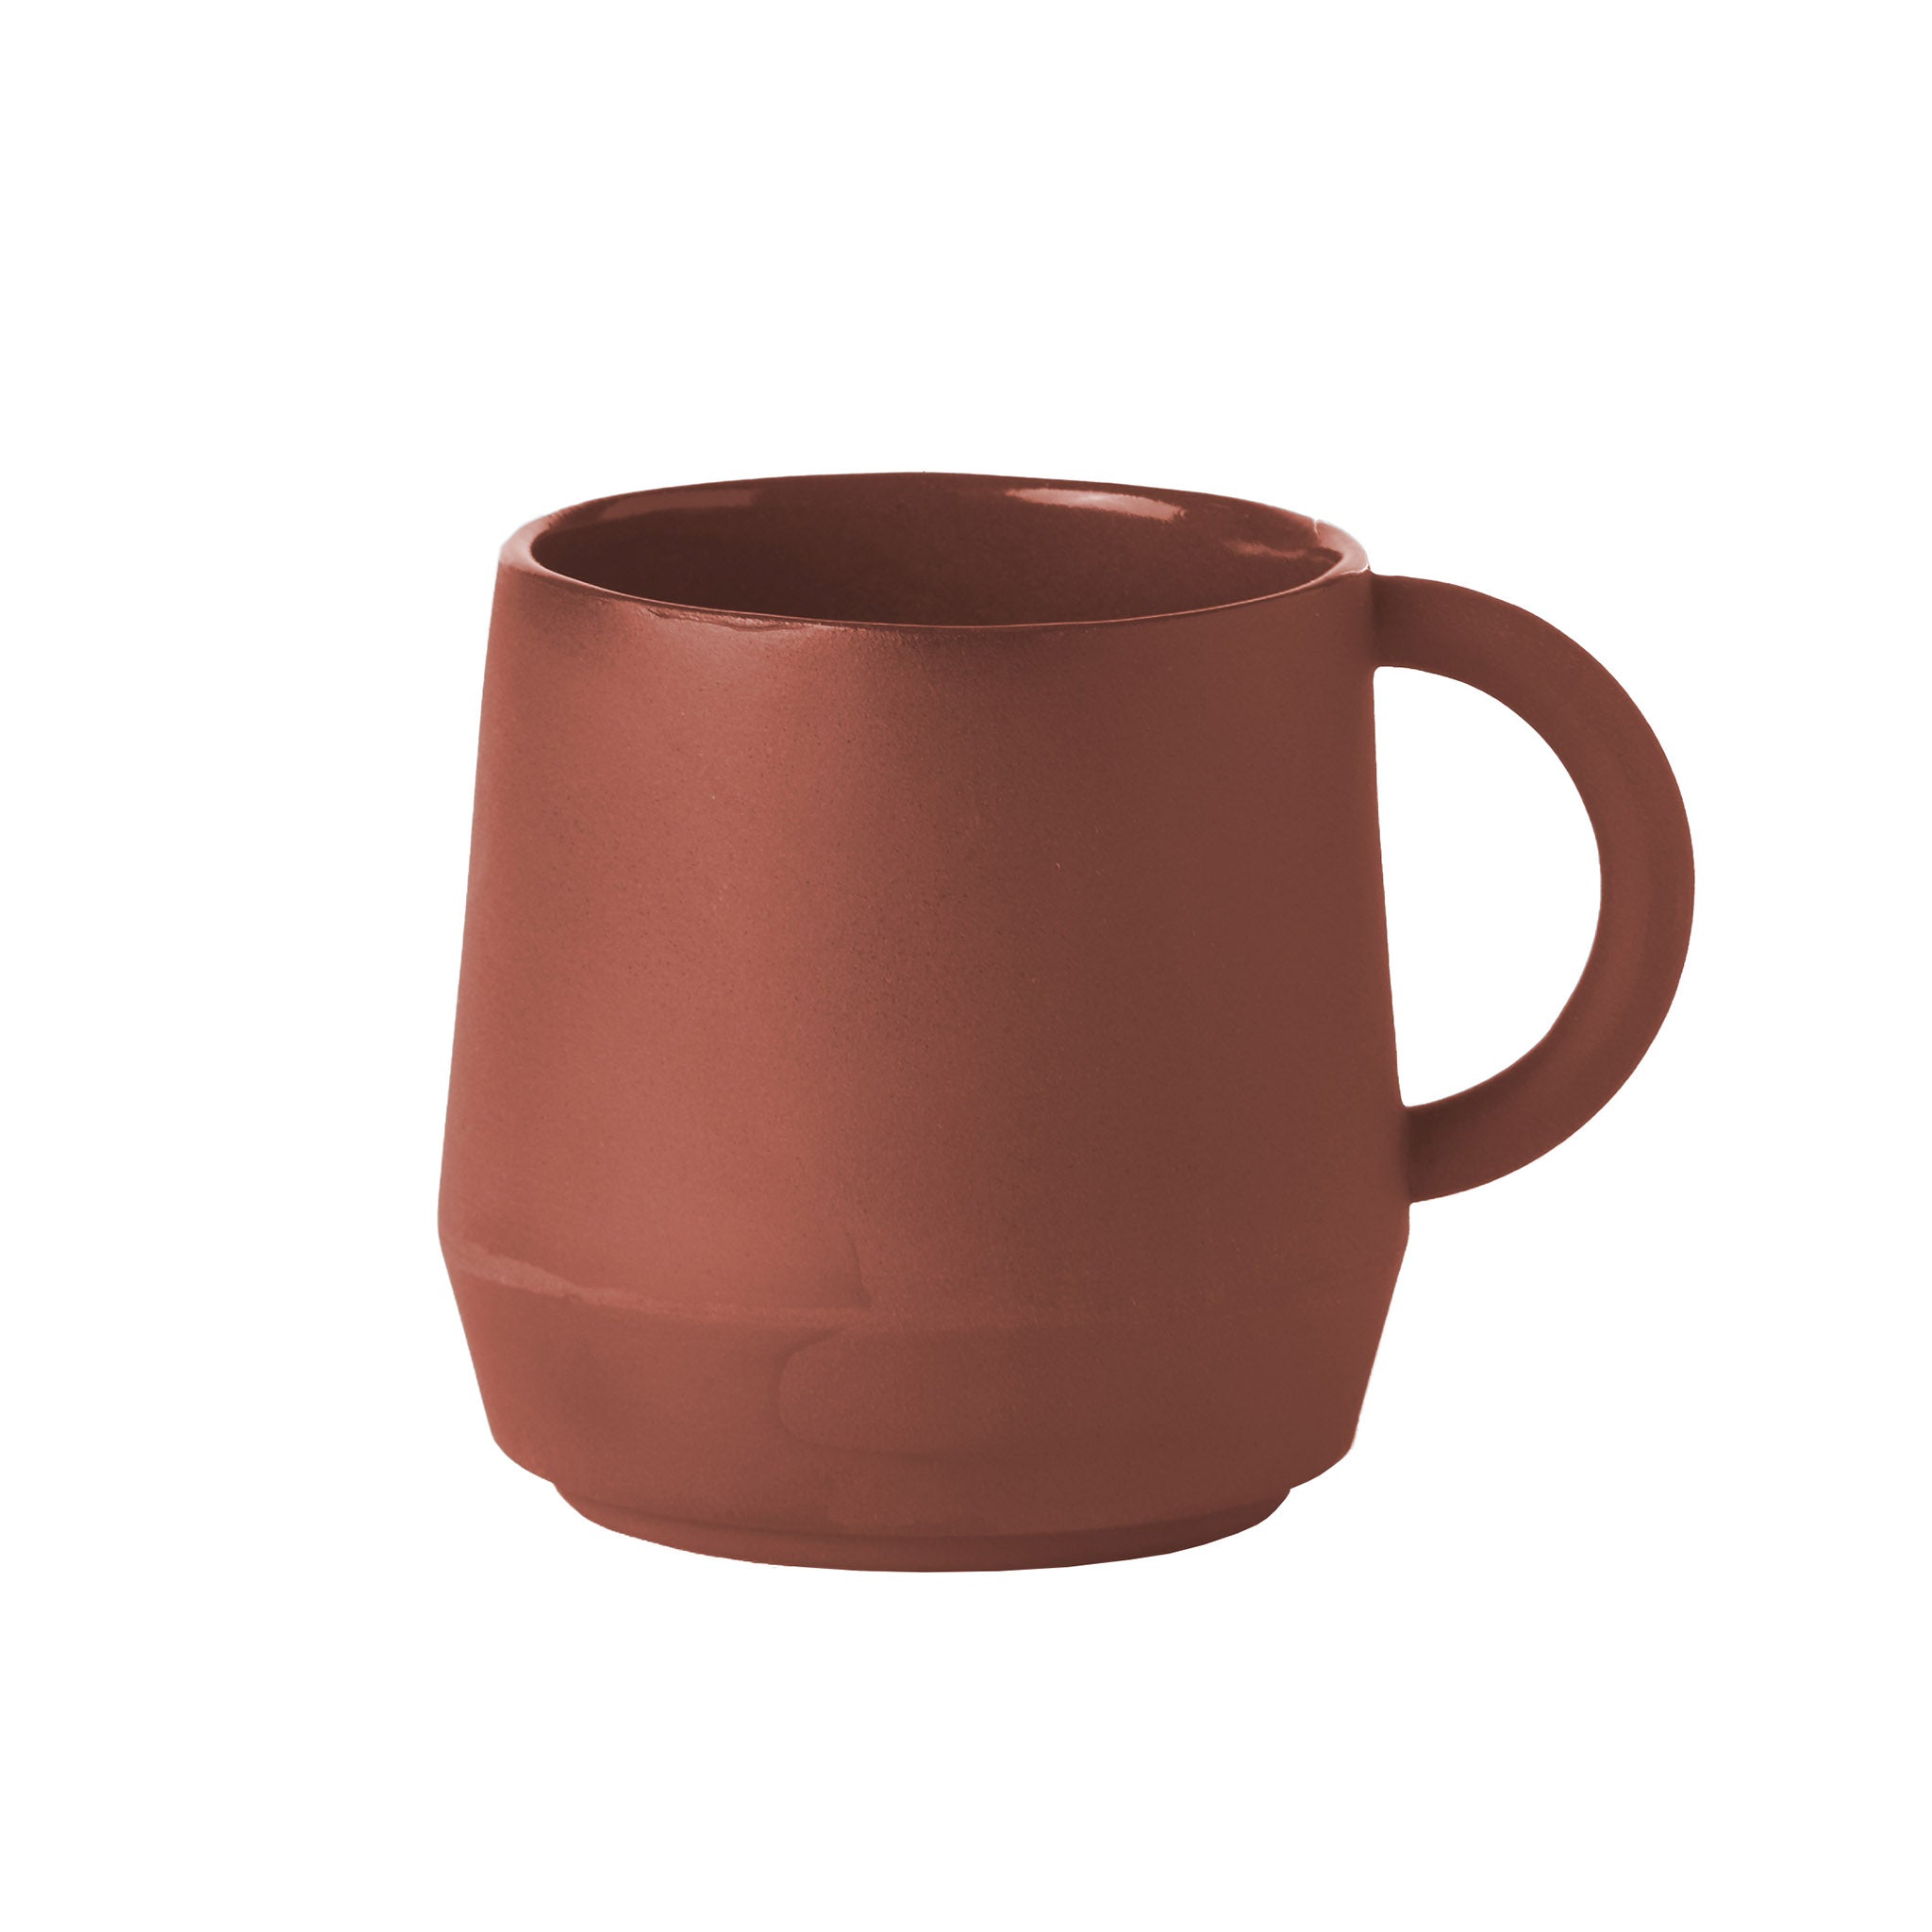 Unison Tasse aus Keramik von Schneid Studio in der Farbe Zimt